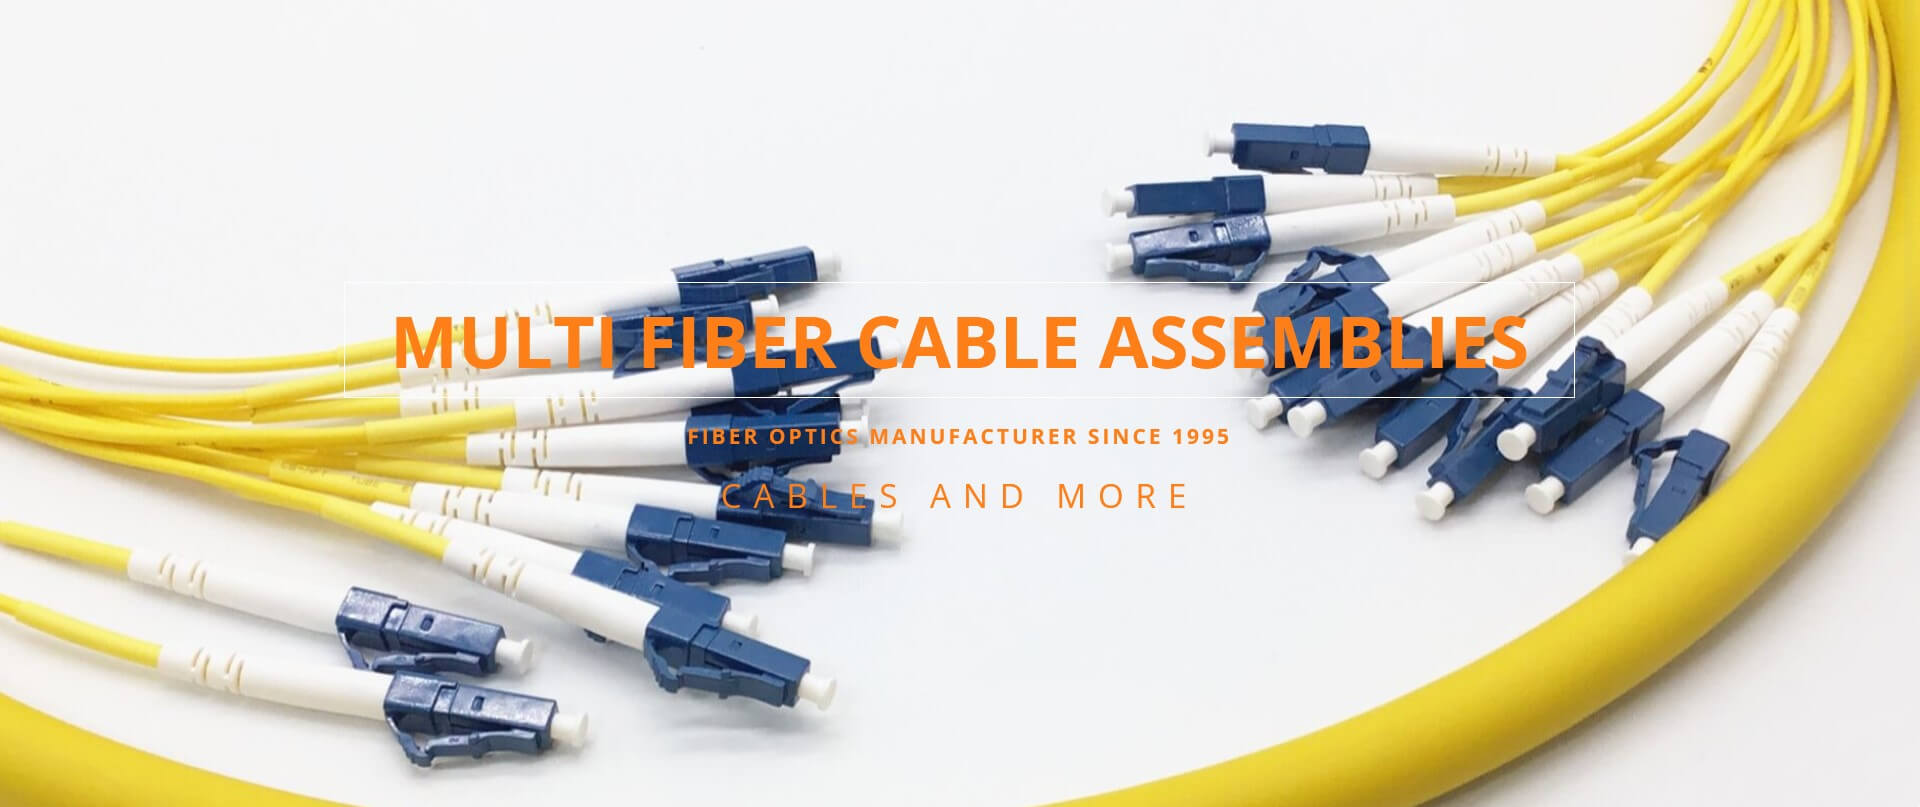 Multi fiber cables